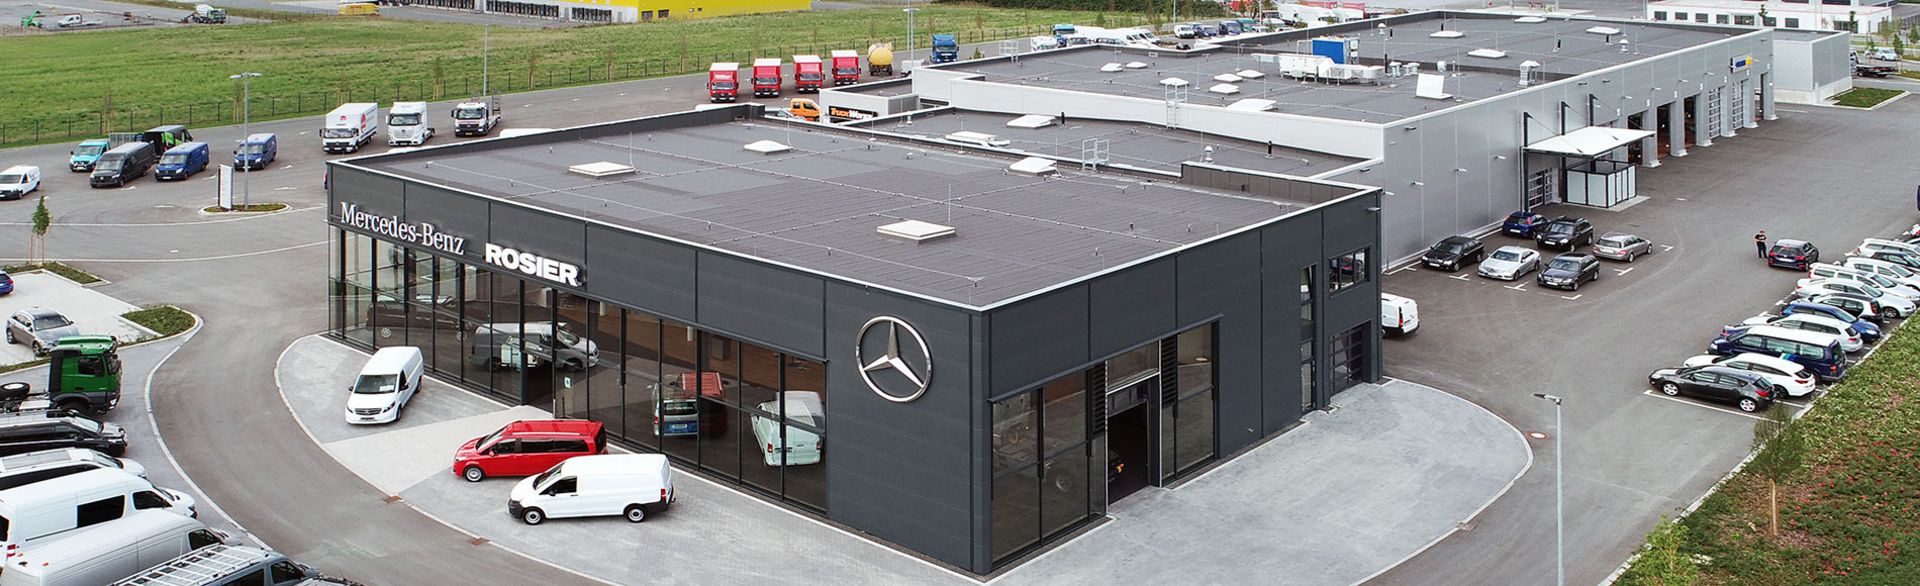 Ihr Mercedes-Benz Partner in Paderborn-Mönkeloh